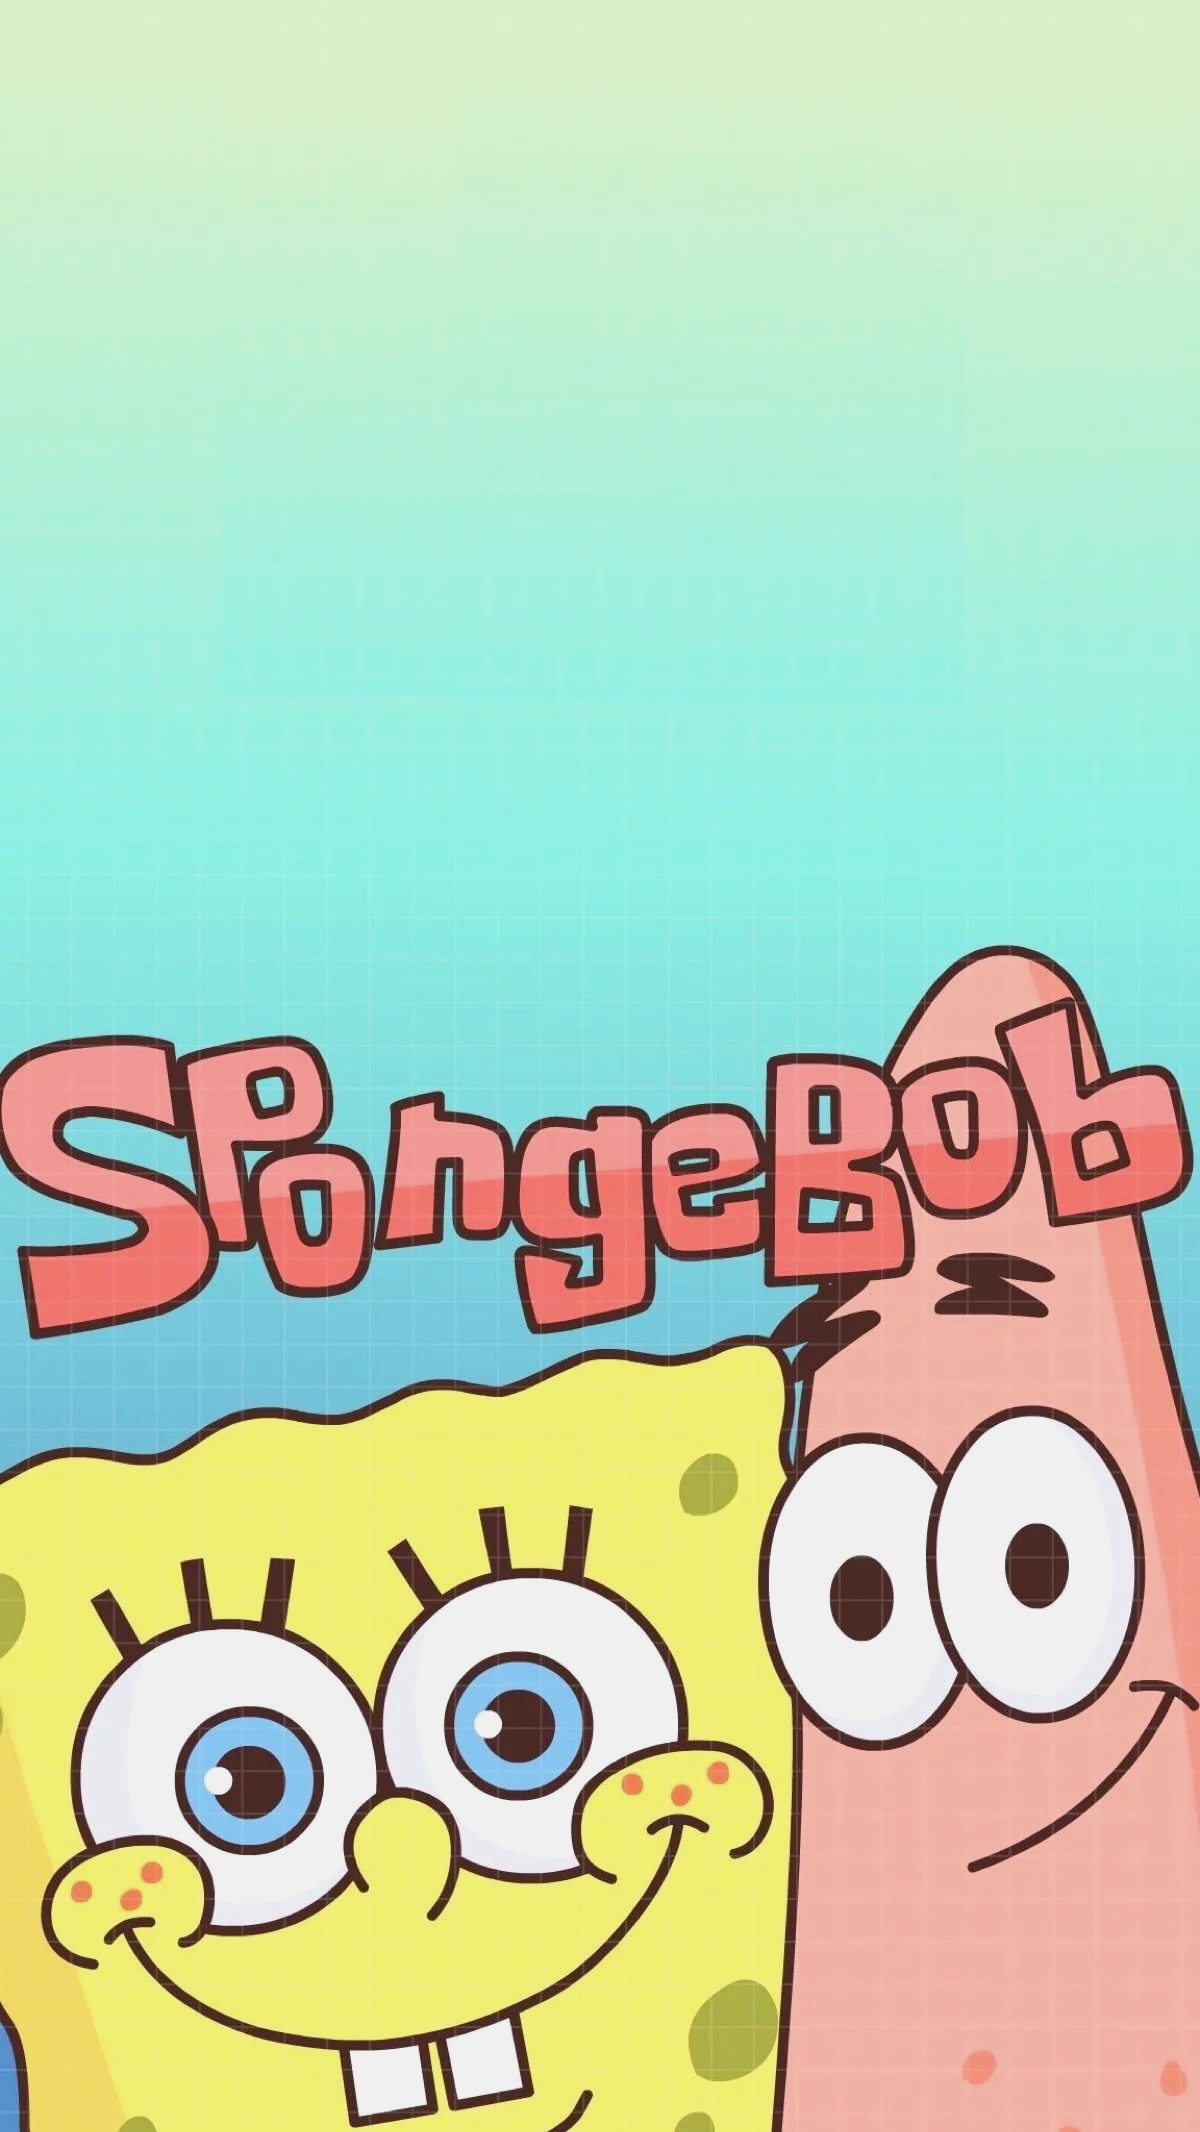 fond d'écran spongebob,dessin animé,texte,police de caractère,illustration,heureux